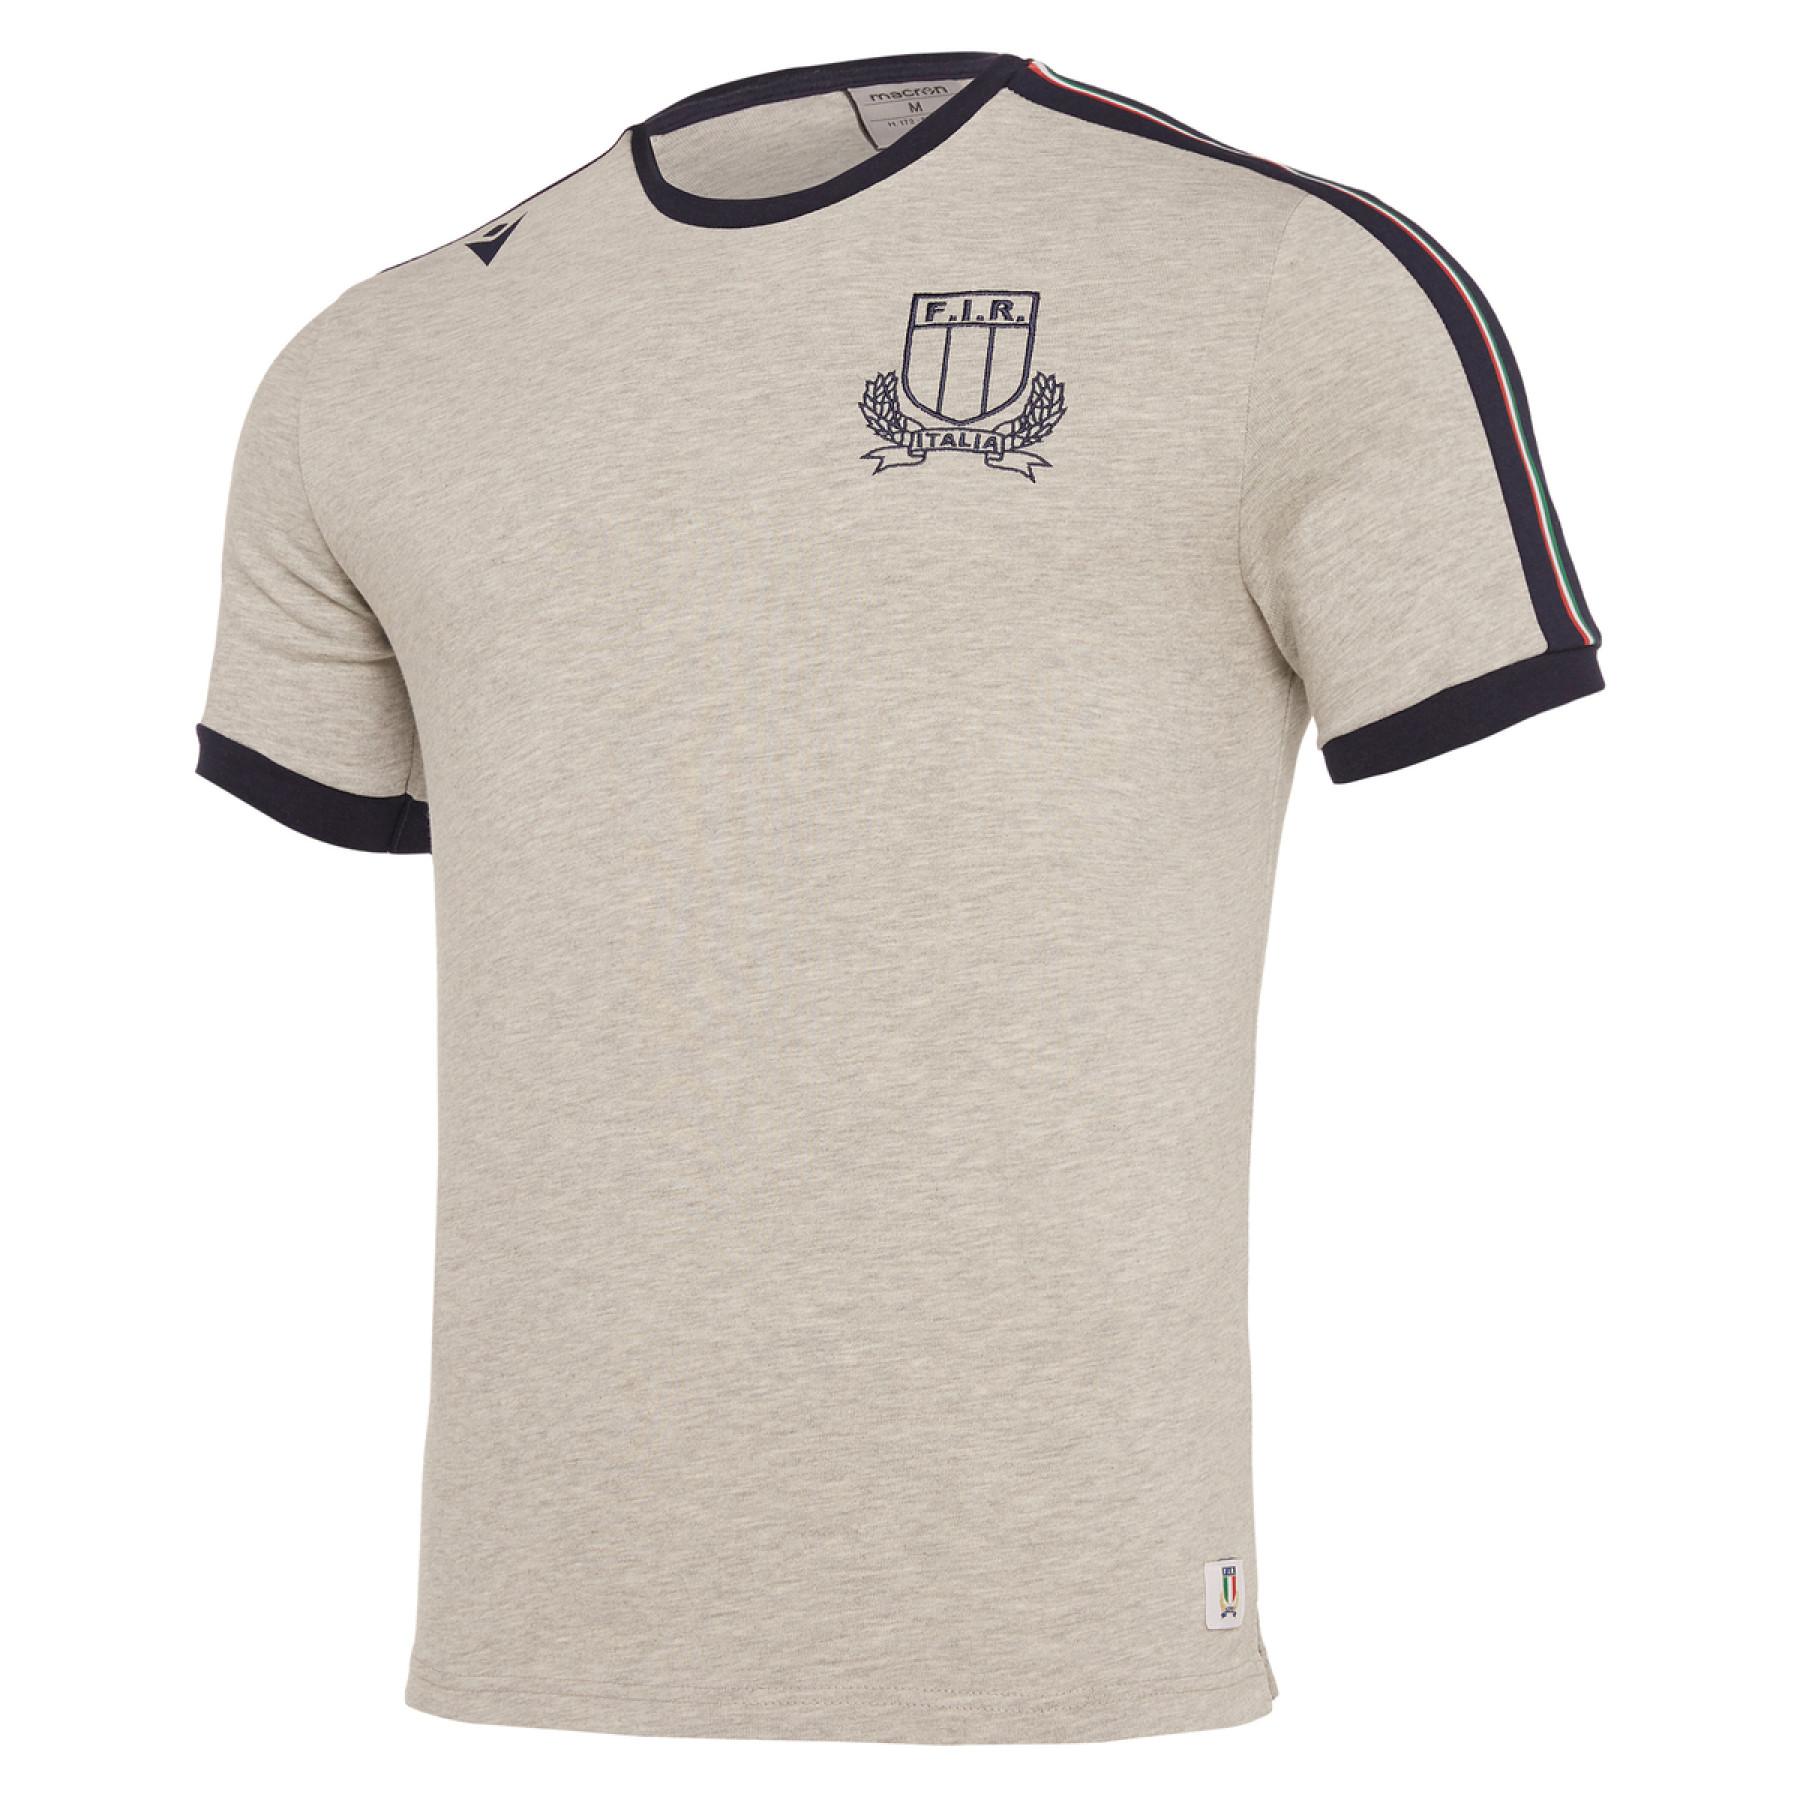 T-shirt algodão Italie rubgy 2019